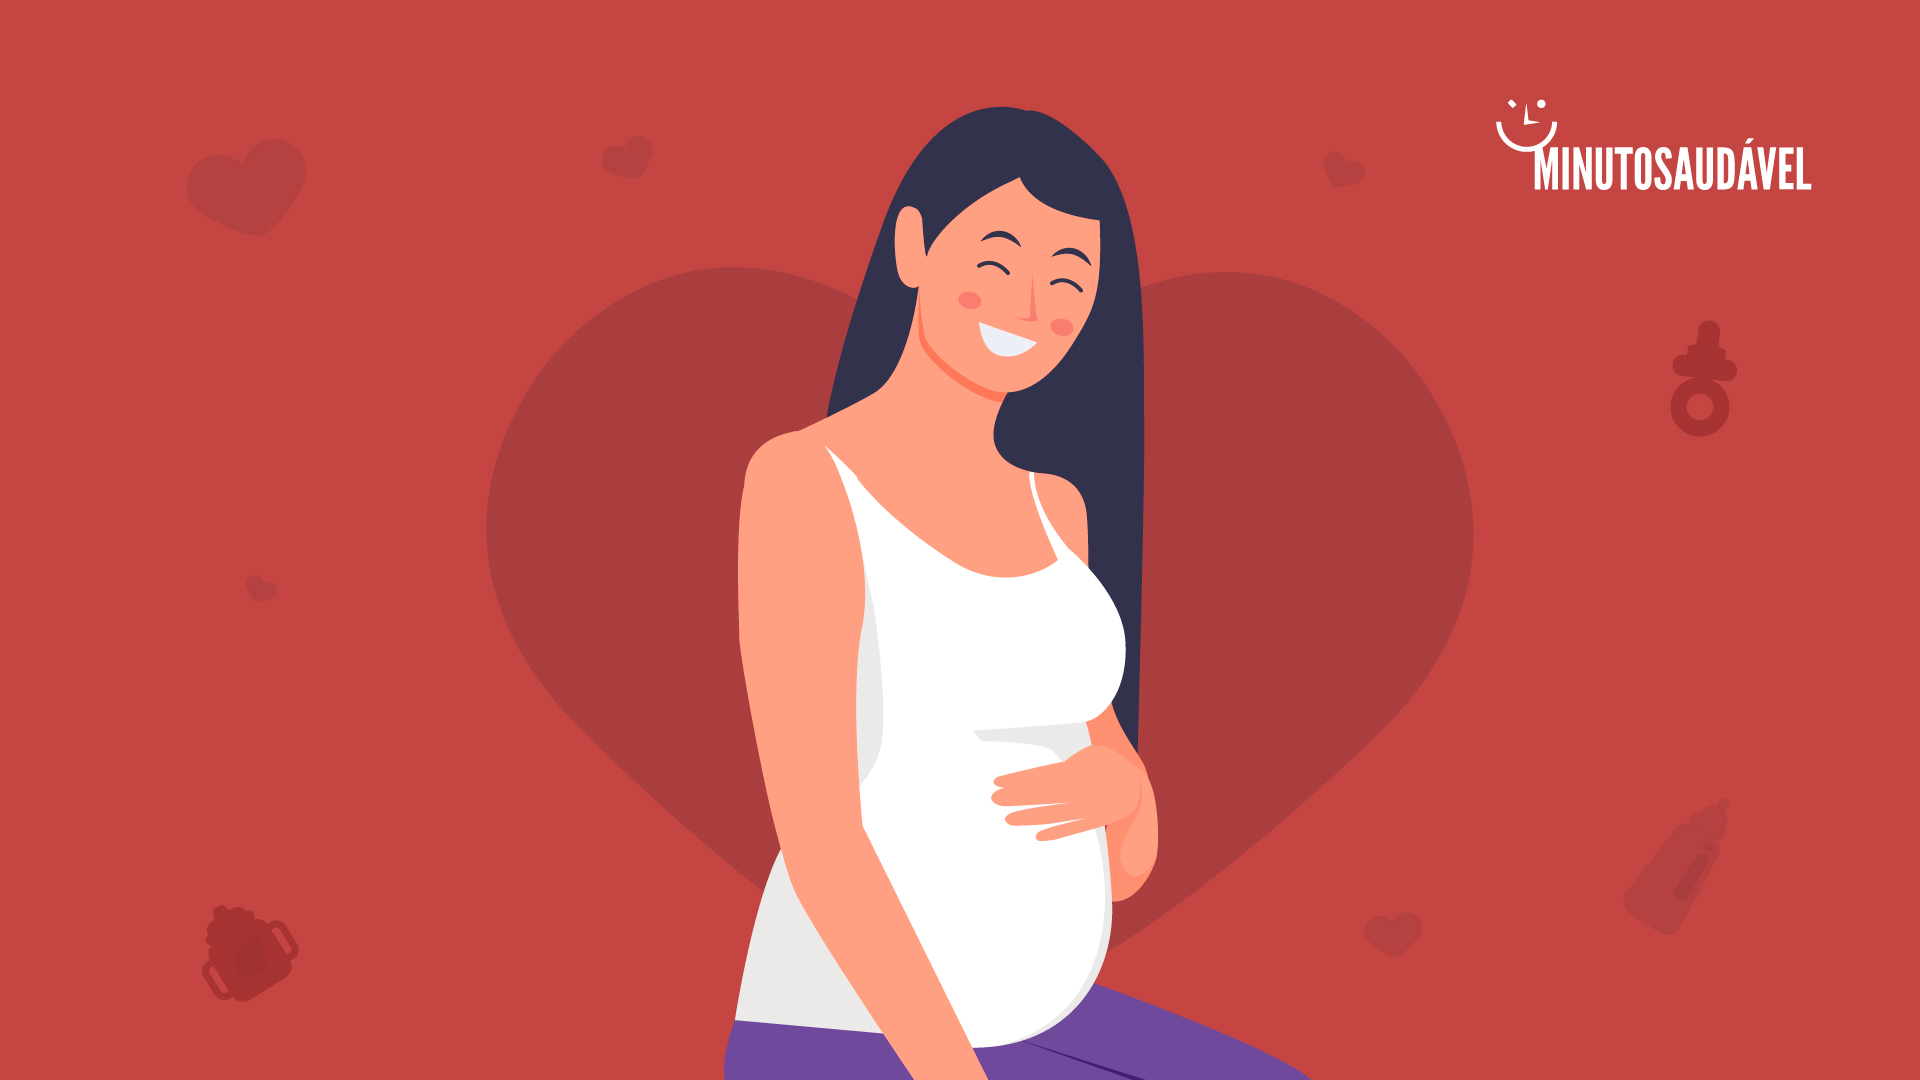 Foto de capa do artigo "16 semanas de gestação: como estão a mãe e o bebê?"